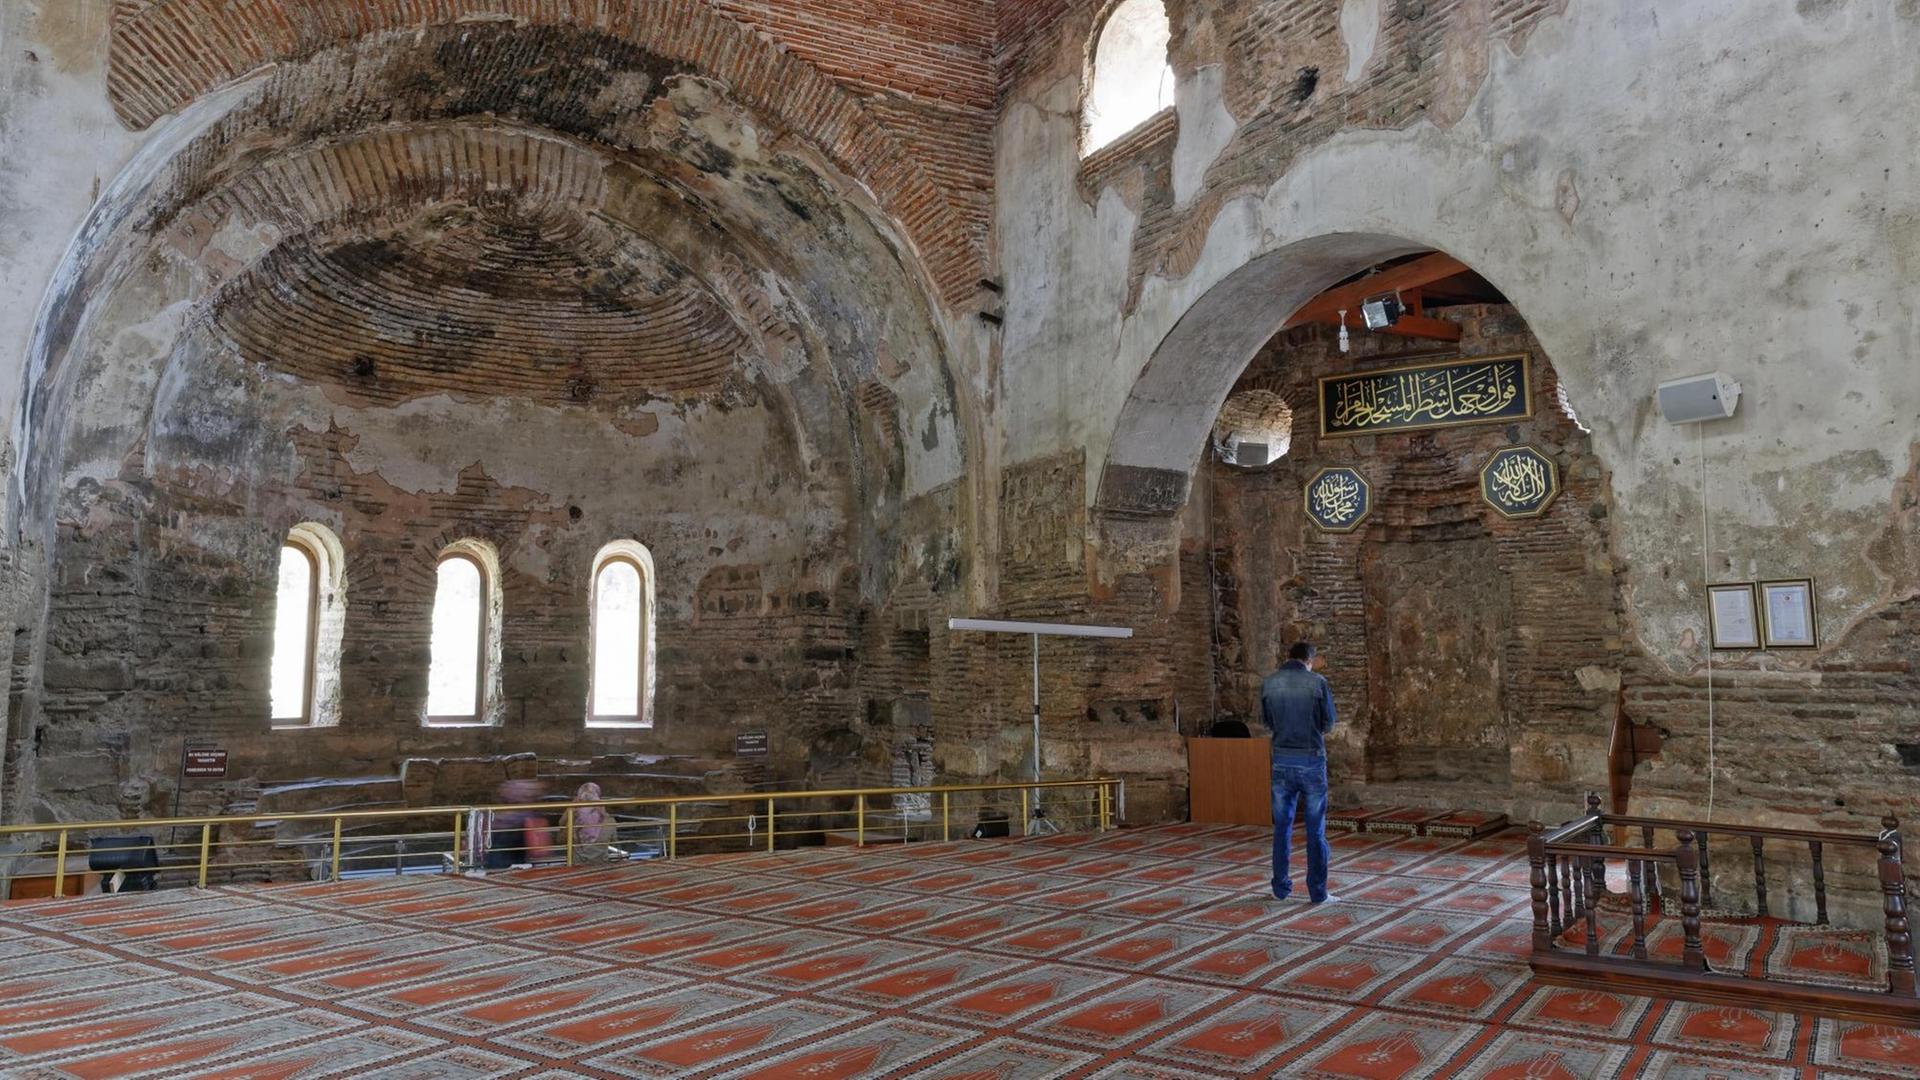 Kirche, Moschee, Museum - und jetzt wieder Moschee: Die Einwohner von Iznik fühlen sich überrumpelt.